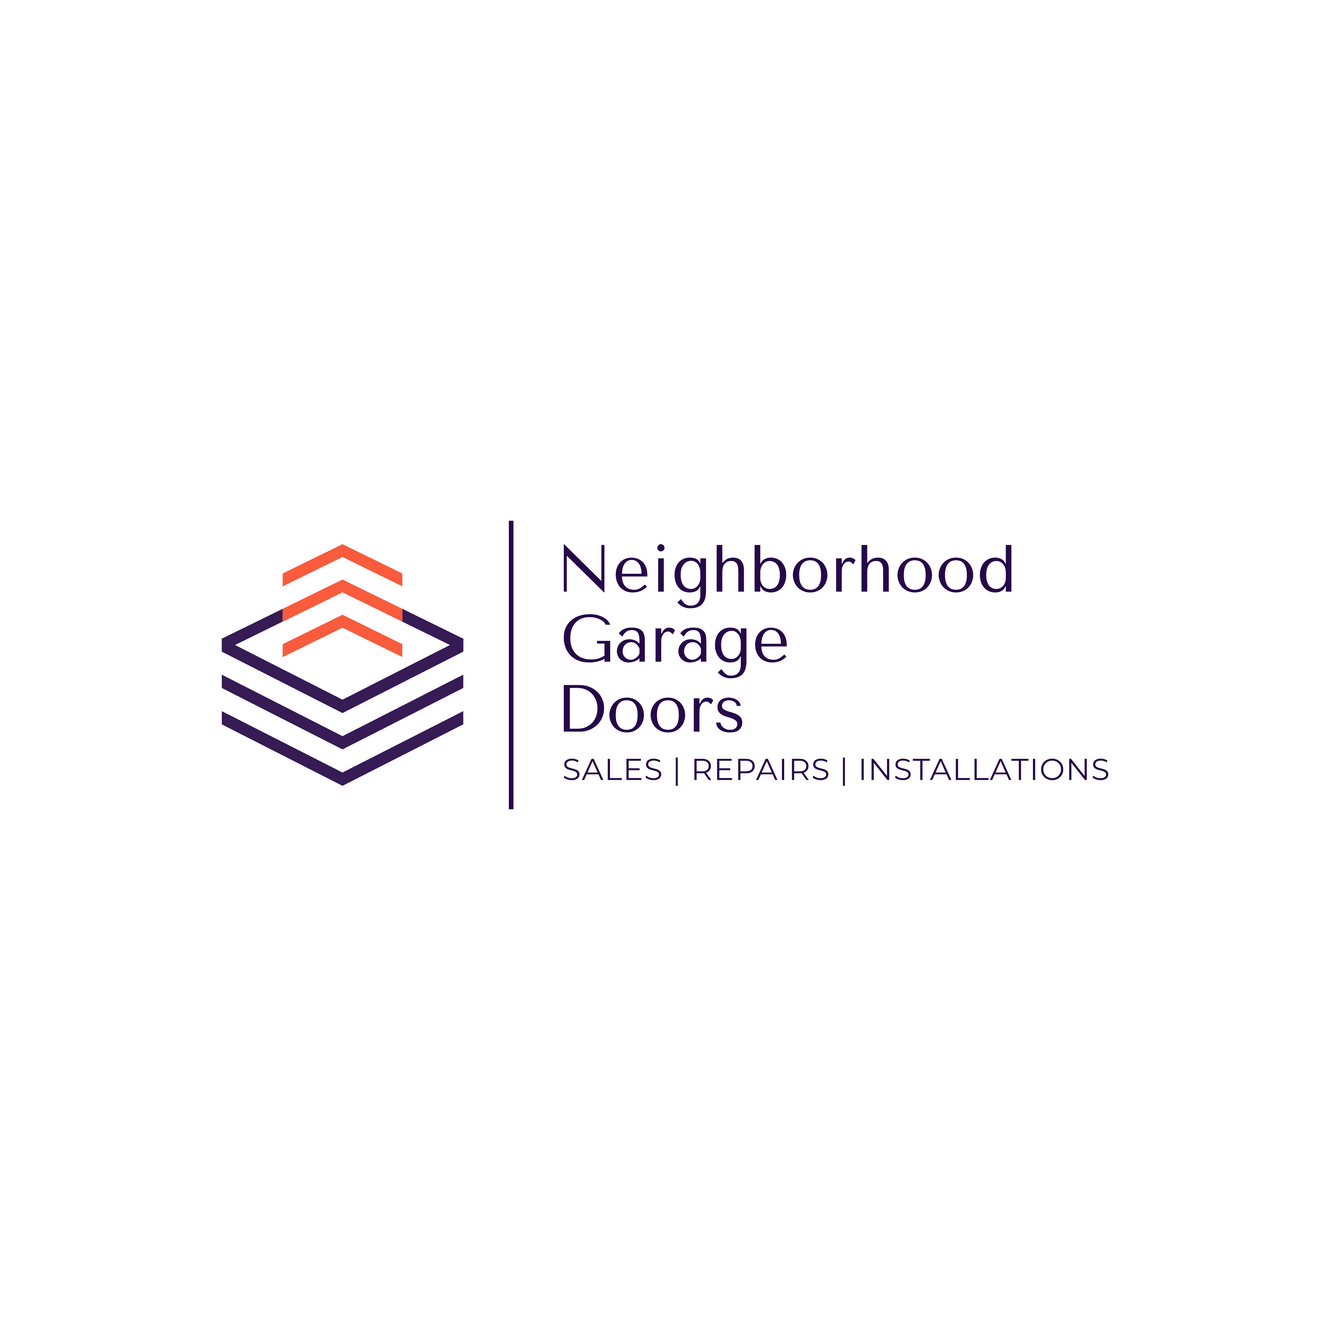 #24/7 Repair To Garage Doors | Neighborhood Garage Doors | Same Day Services